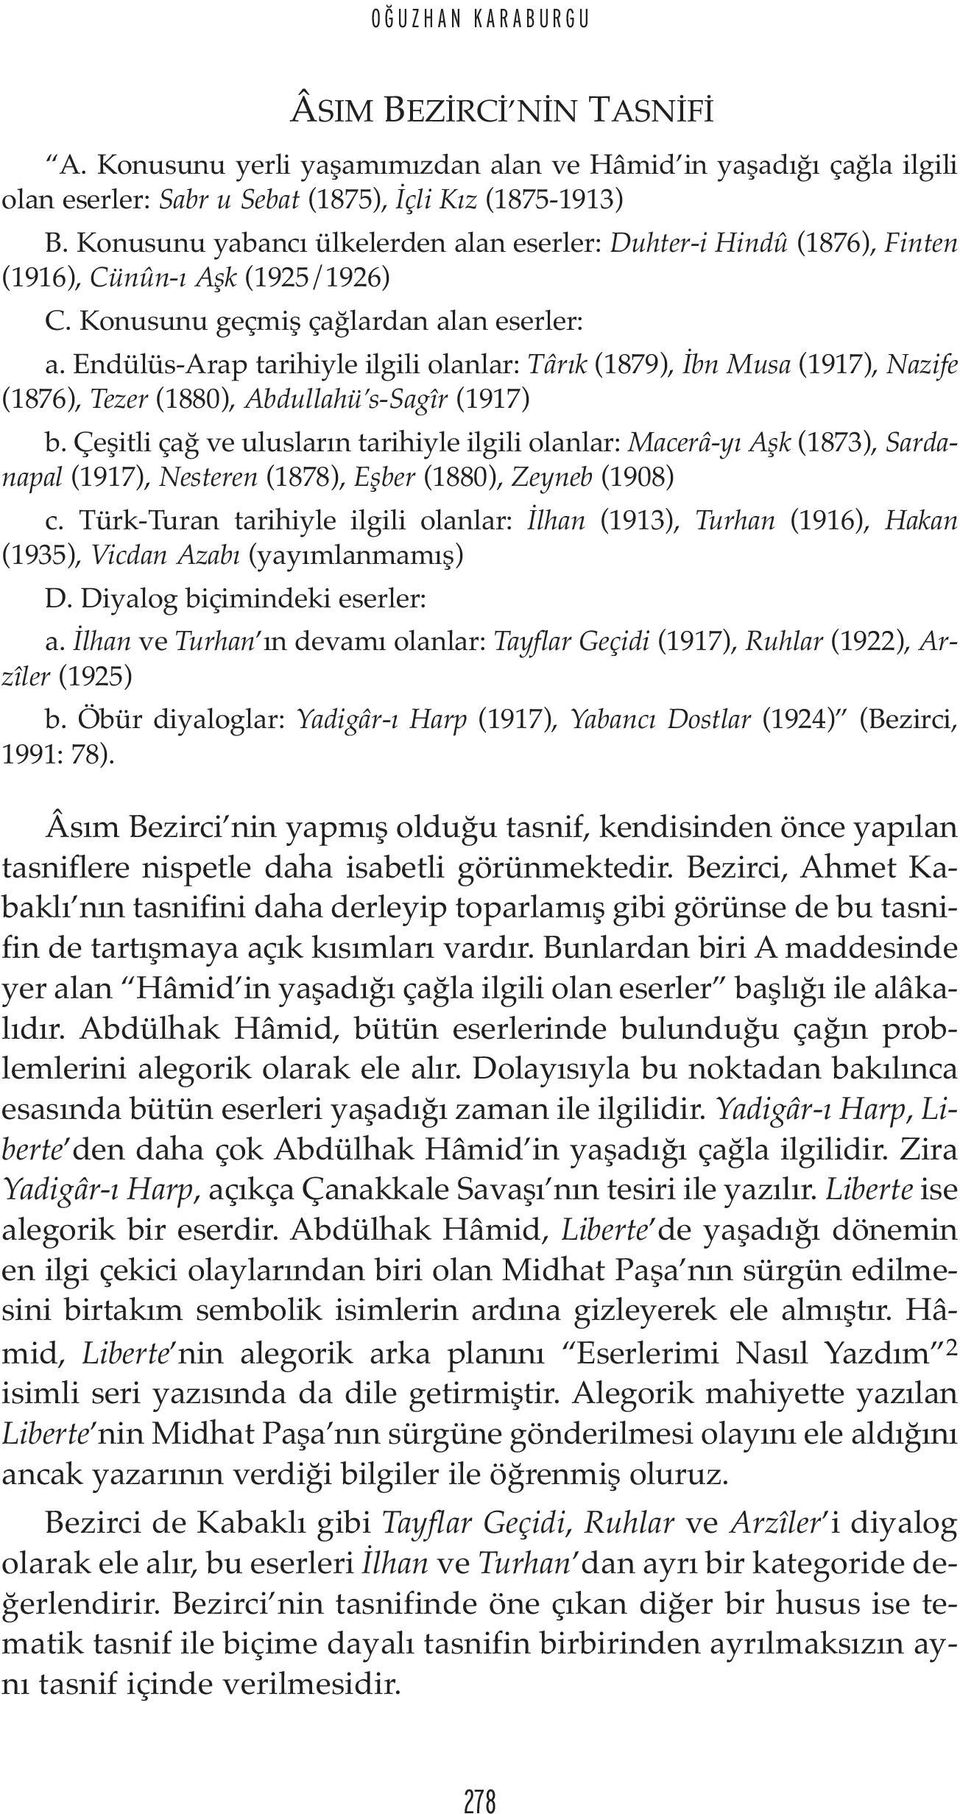 Endülüs-Arap tarihiyle ilgili olanlar: Târık (1879), İbn Musa (1917), Nazife (1876), Tezer (1880), Abdullahü s-sagîr (1917) b.